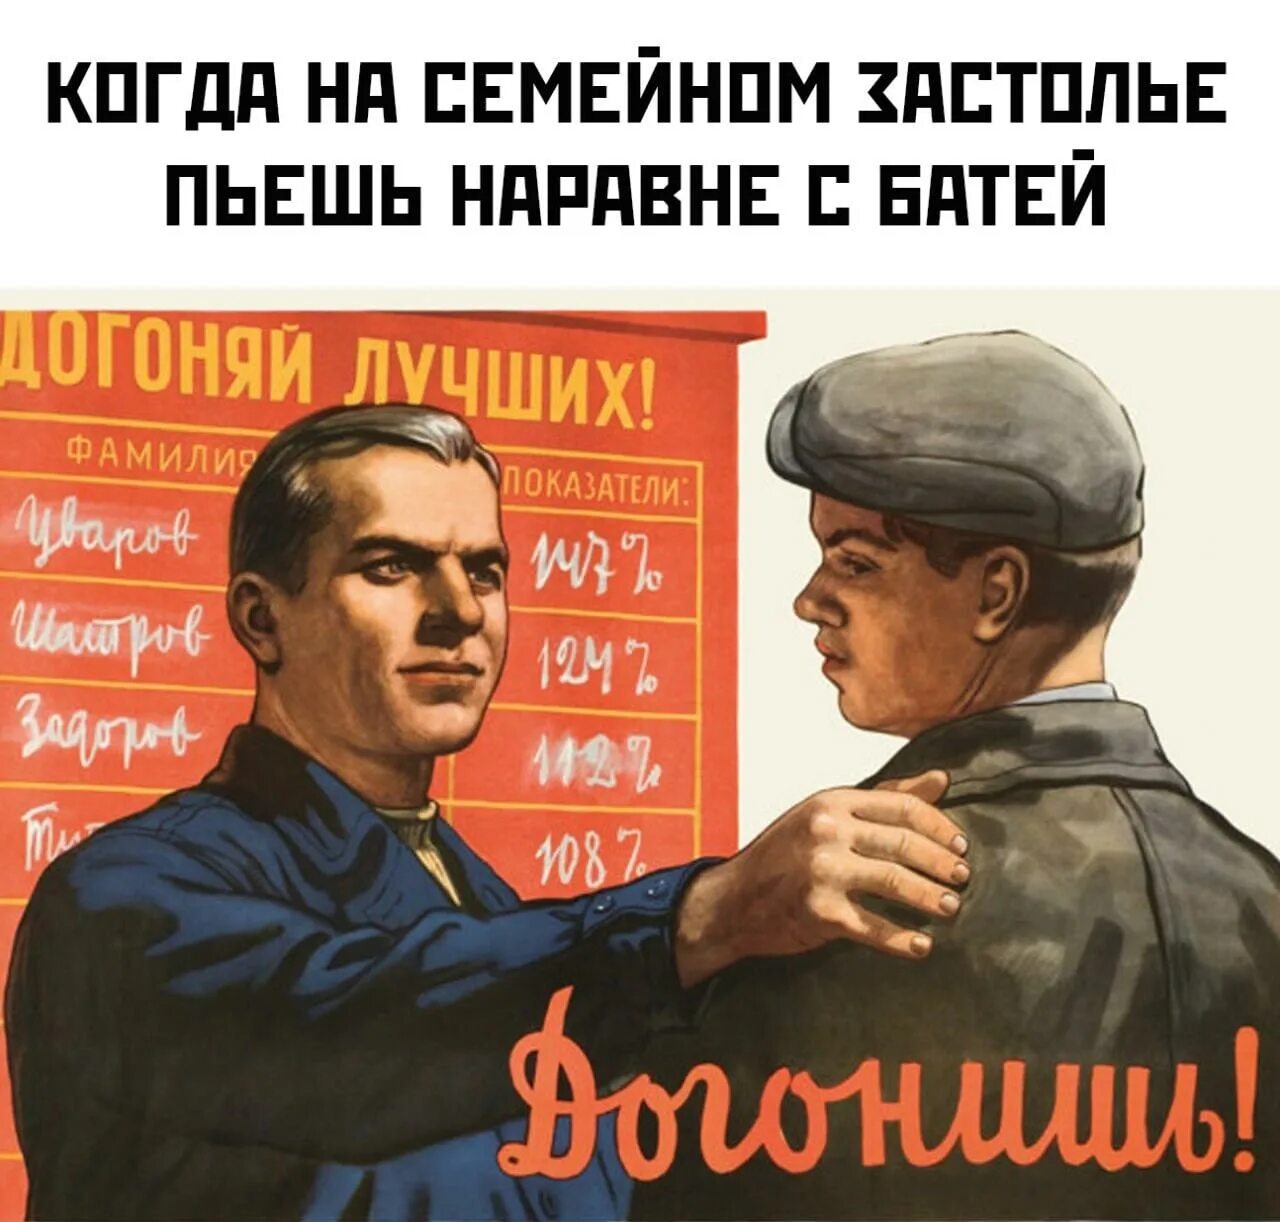 Догонишь почему и. Советские плакаты товарищ. Прикольные переделанные советские плакаты. Советские плакаты про работу. Советские плакаты приколы юмор.